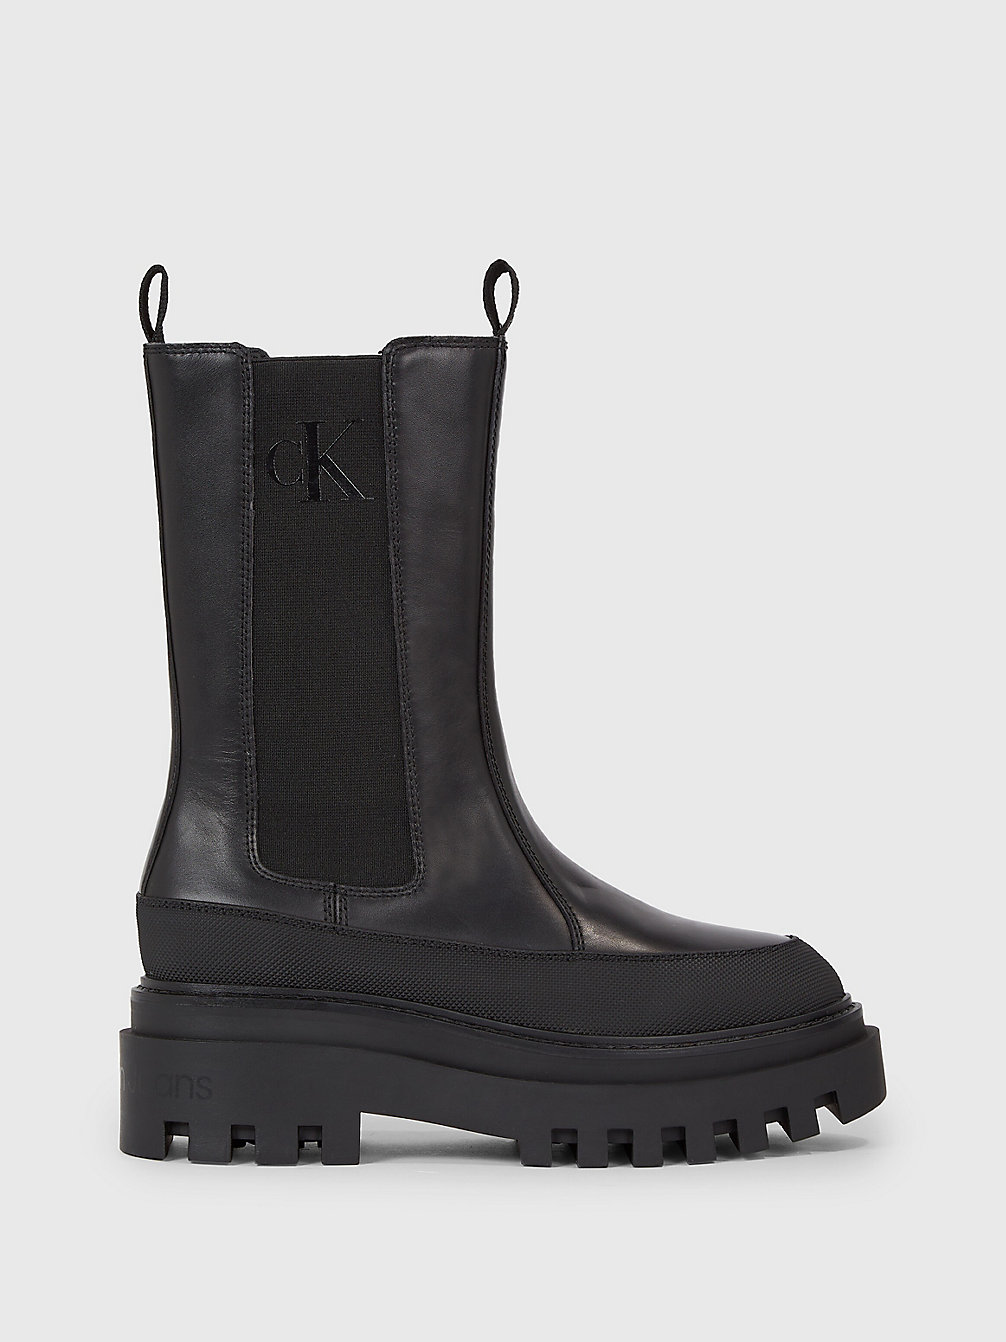 TRIPLE BLACK Chelsea-Boots Aus Leder Mit Plateau-Sohle undefined Damen Calvin Klein